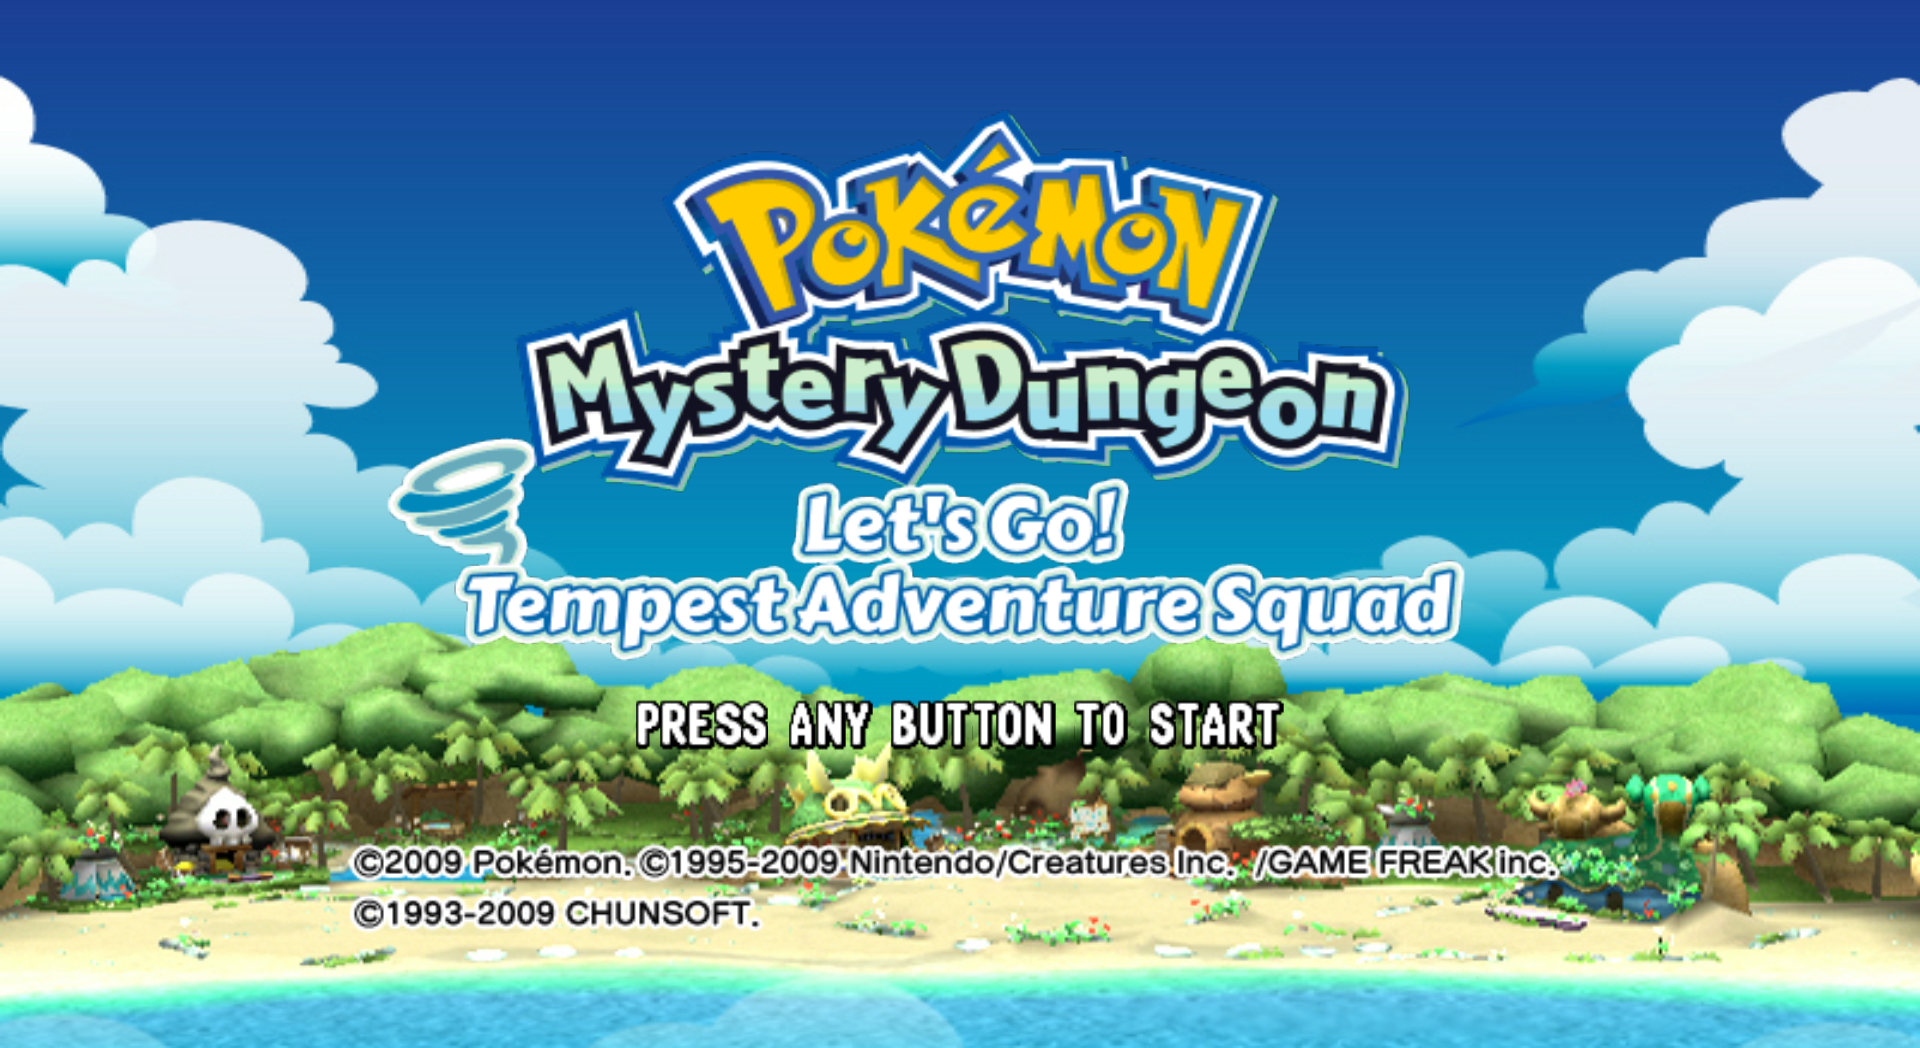 Descargar el ROM de Pokémon Mystery Dungeon - Let's Go! Tempest Adventure Squad